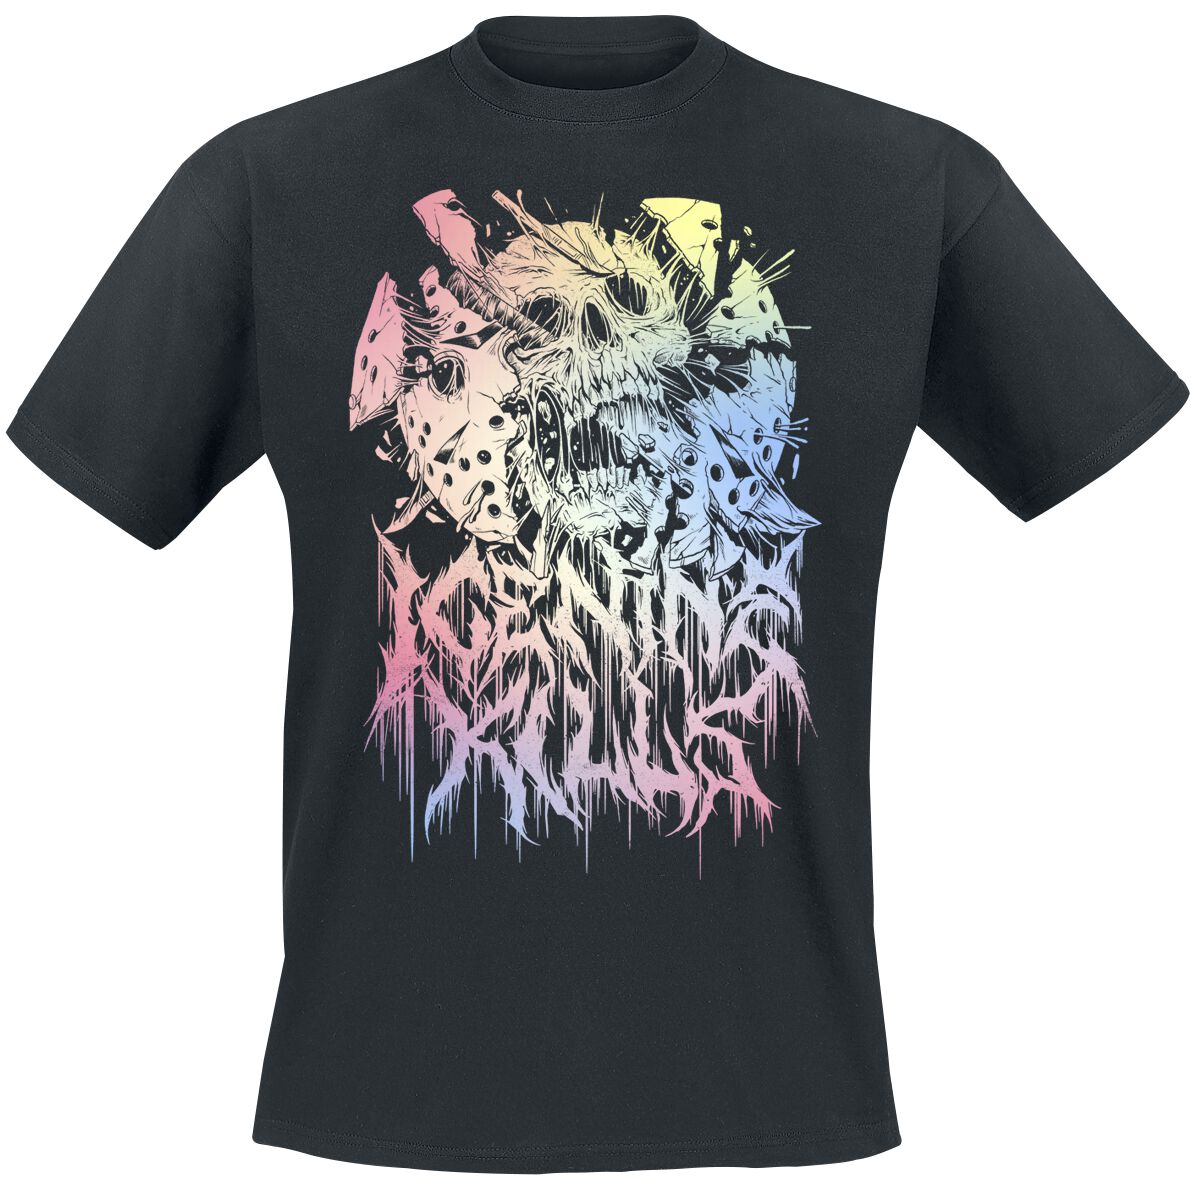 Ice Nine Kills T-Shirt - Pastel Skull - M bis 4XL - für Männer - Größe L - schwarz  - Lizenziertes Merchandise!